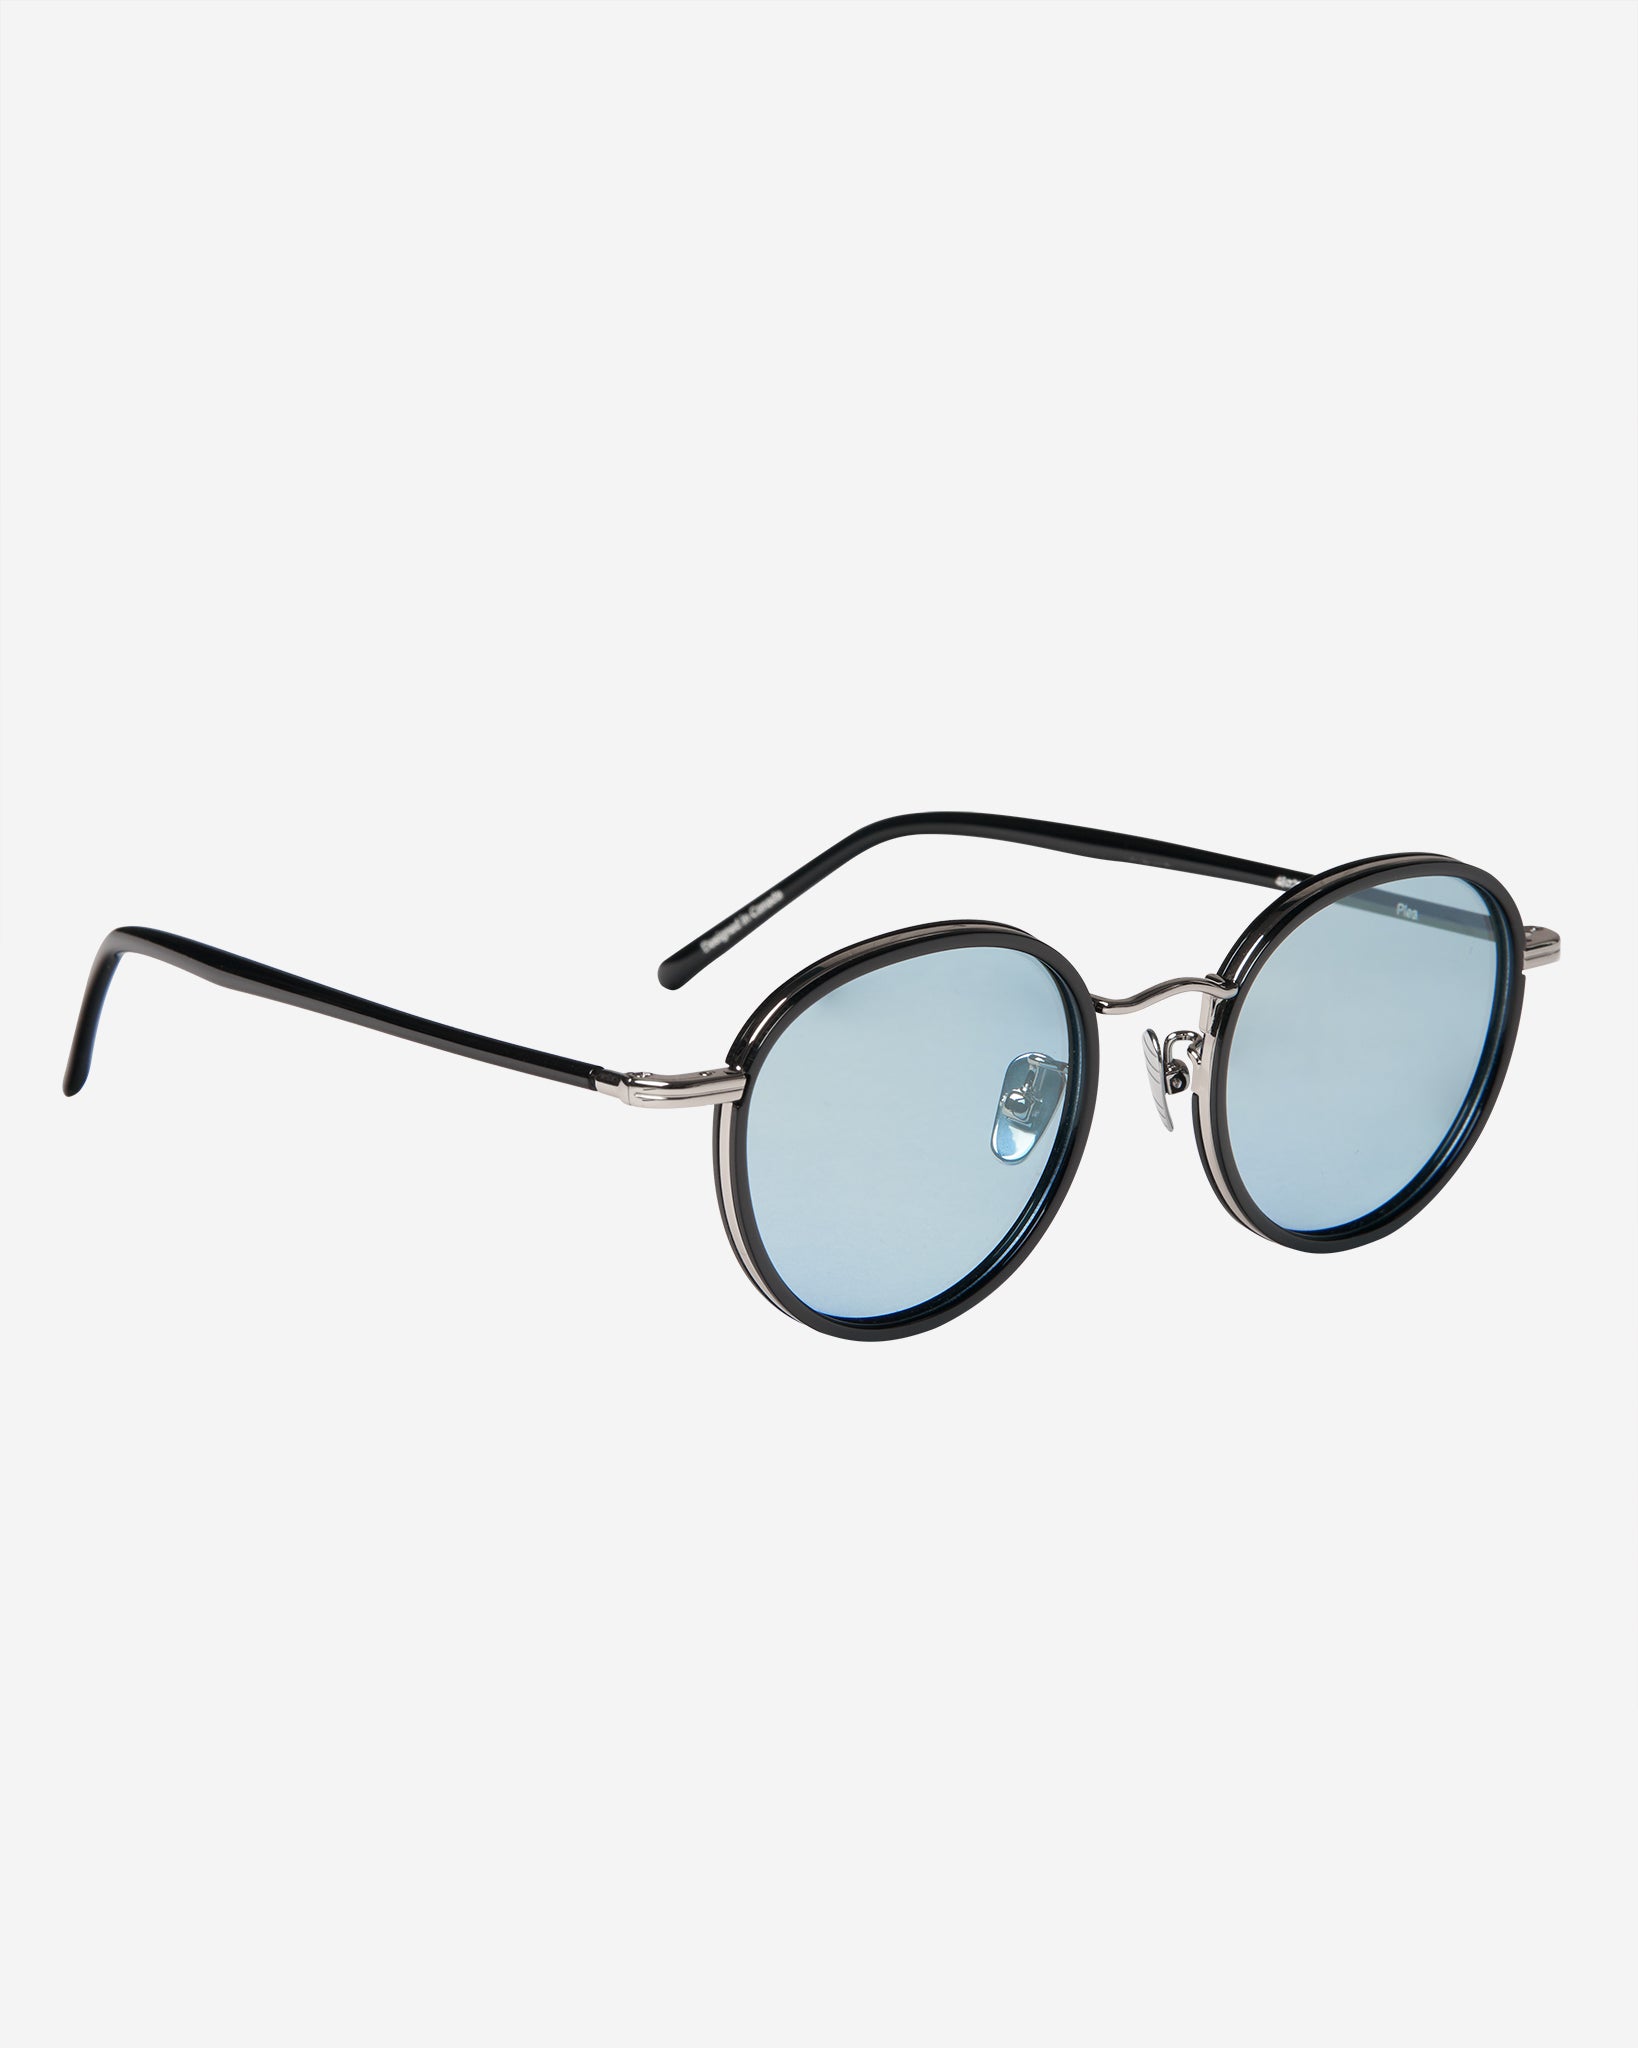 Plea Sunglasses - Black/Silver